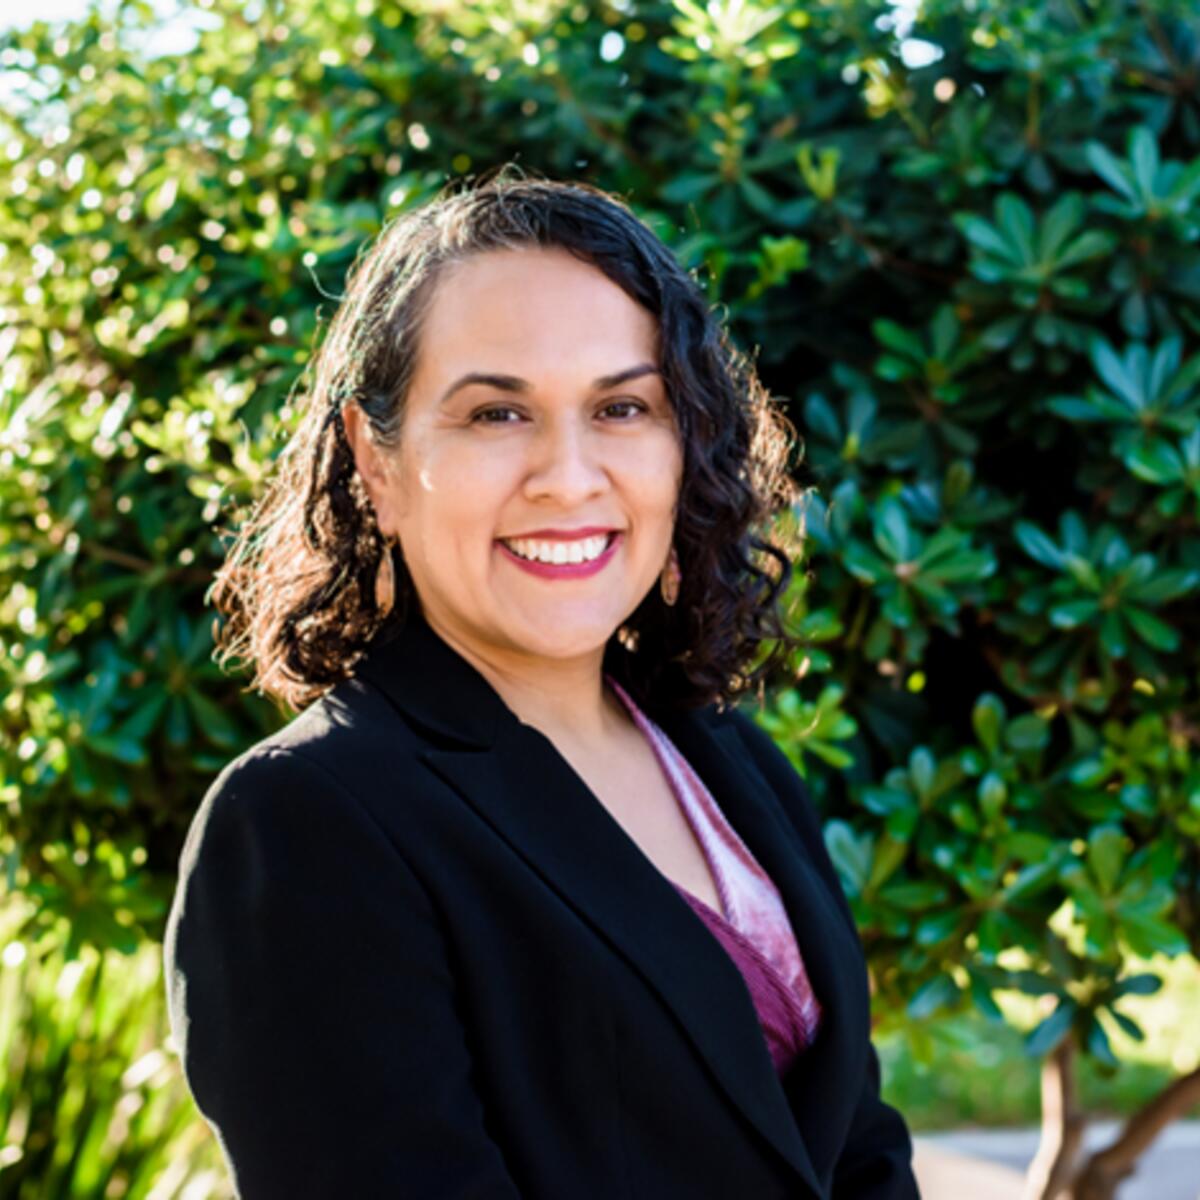 L.A. school board candidate Maria Benes